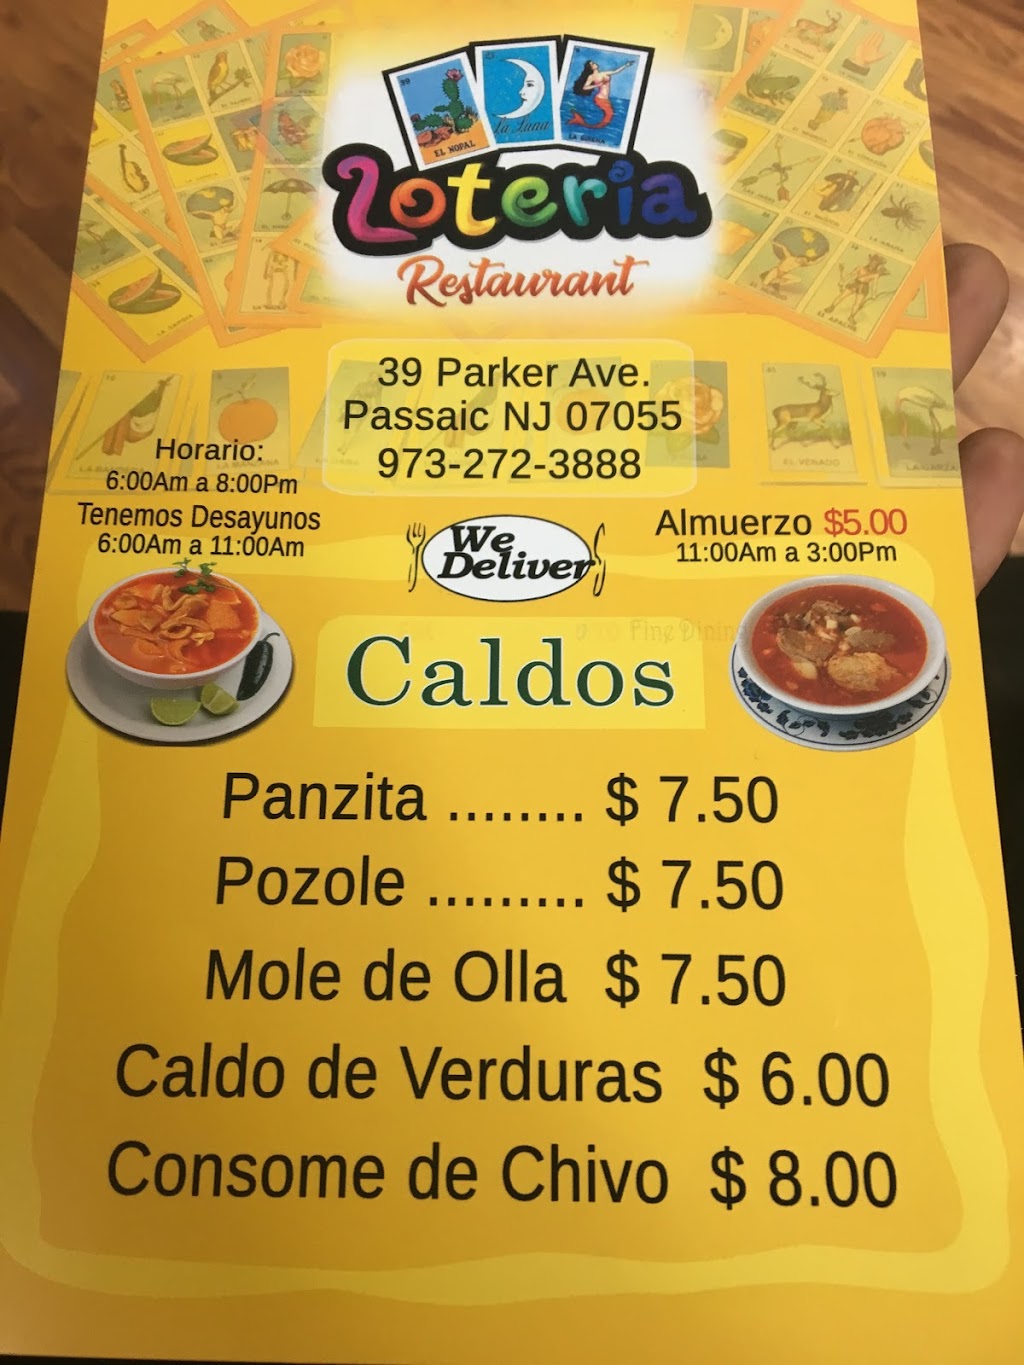 La Loteria Restaurant | 49 Parker Ave, Passaic, NJ 07055 | Phone: (973) 272-3888